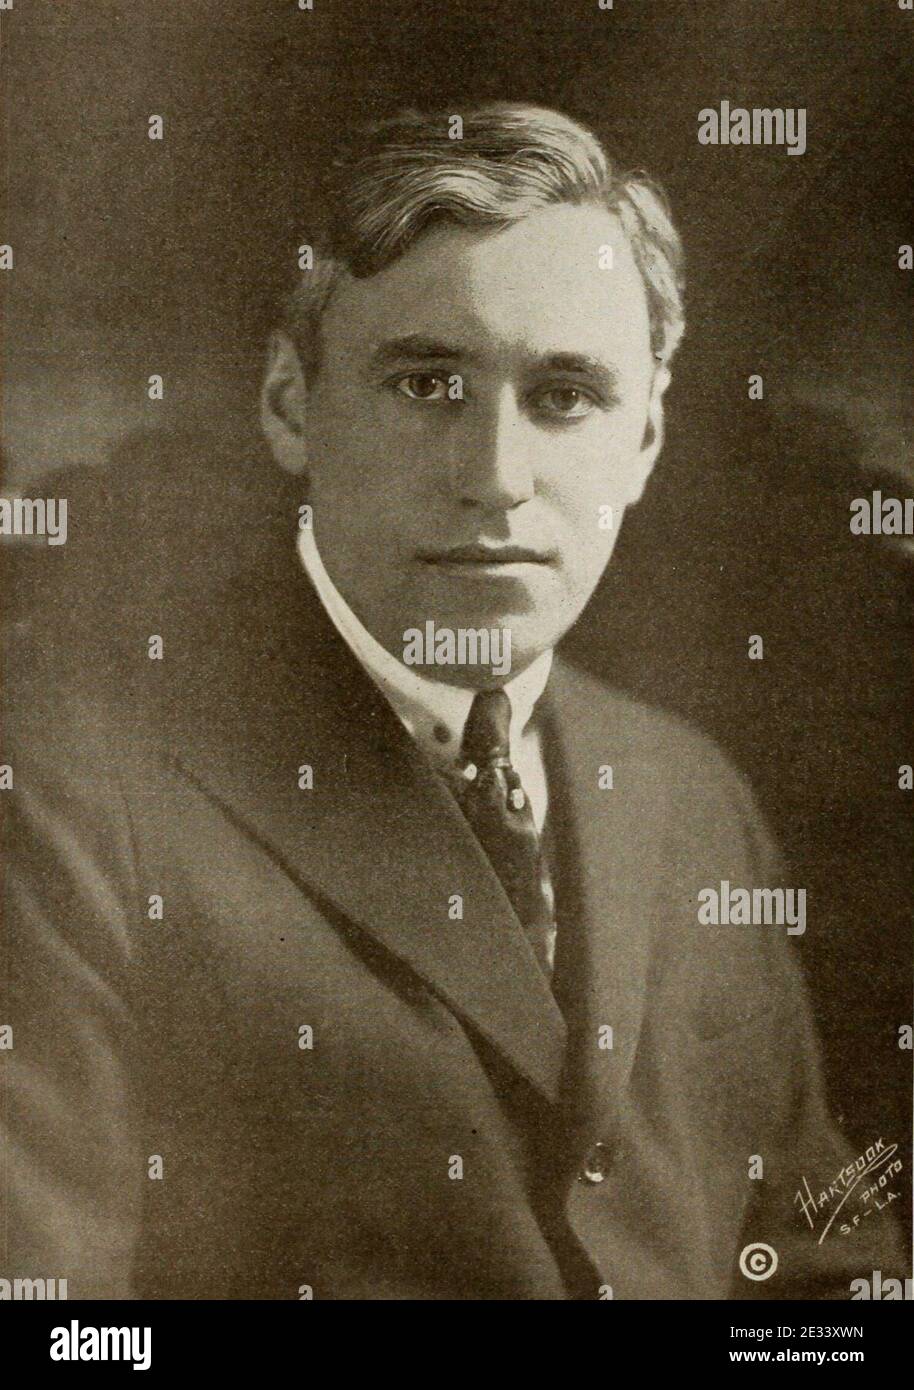 Mack Sennett 1916. Stock Photo